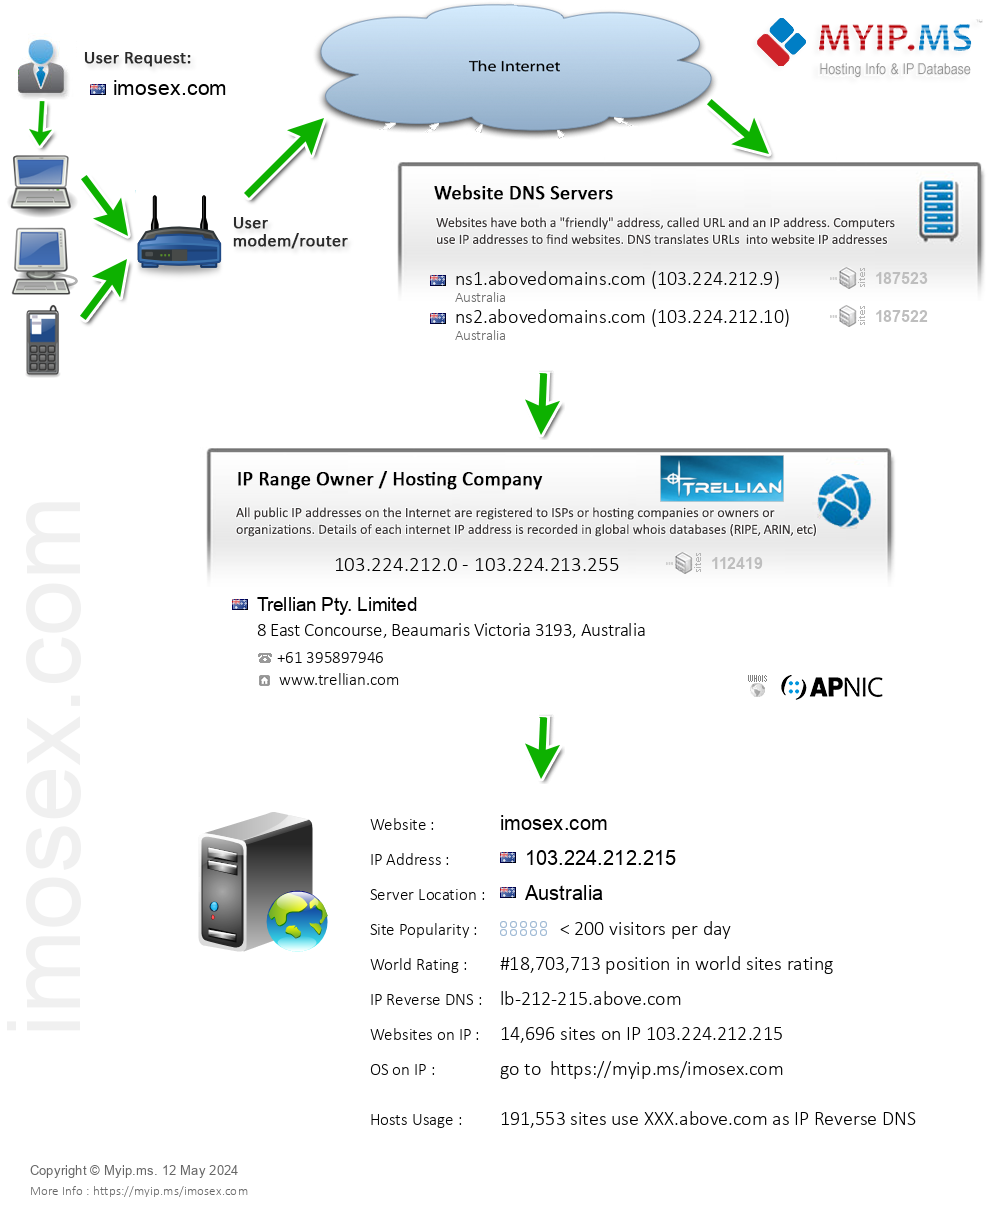 Imosex.com - Website Hosting Visual IP Diagram